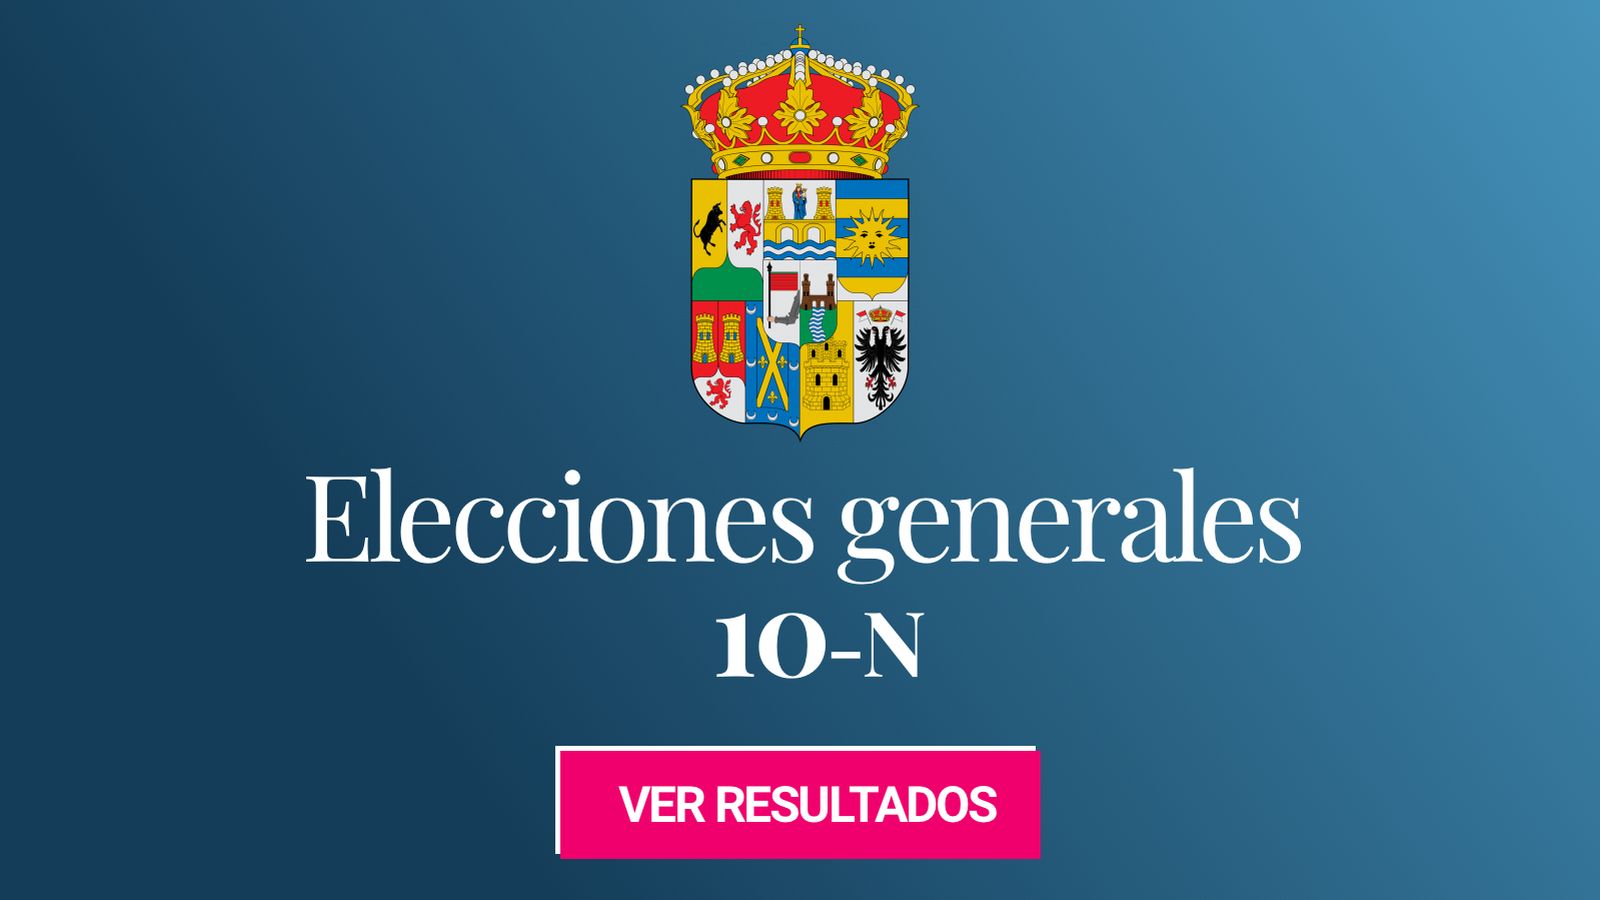 Foto: Elecciones generales 2019 en la provincia de Zamora. (C.C./HansenBCN)